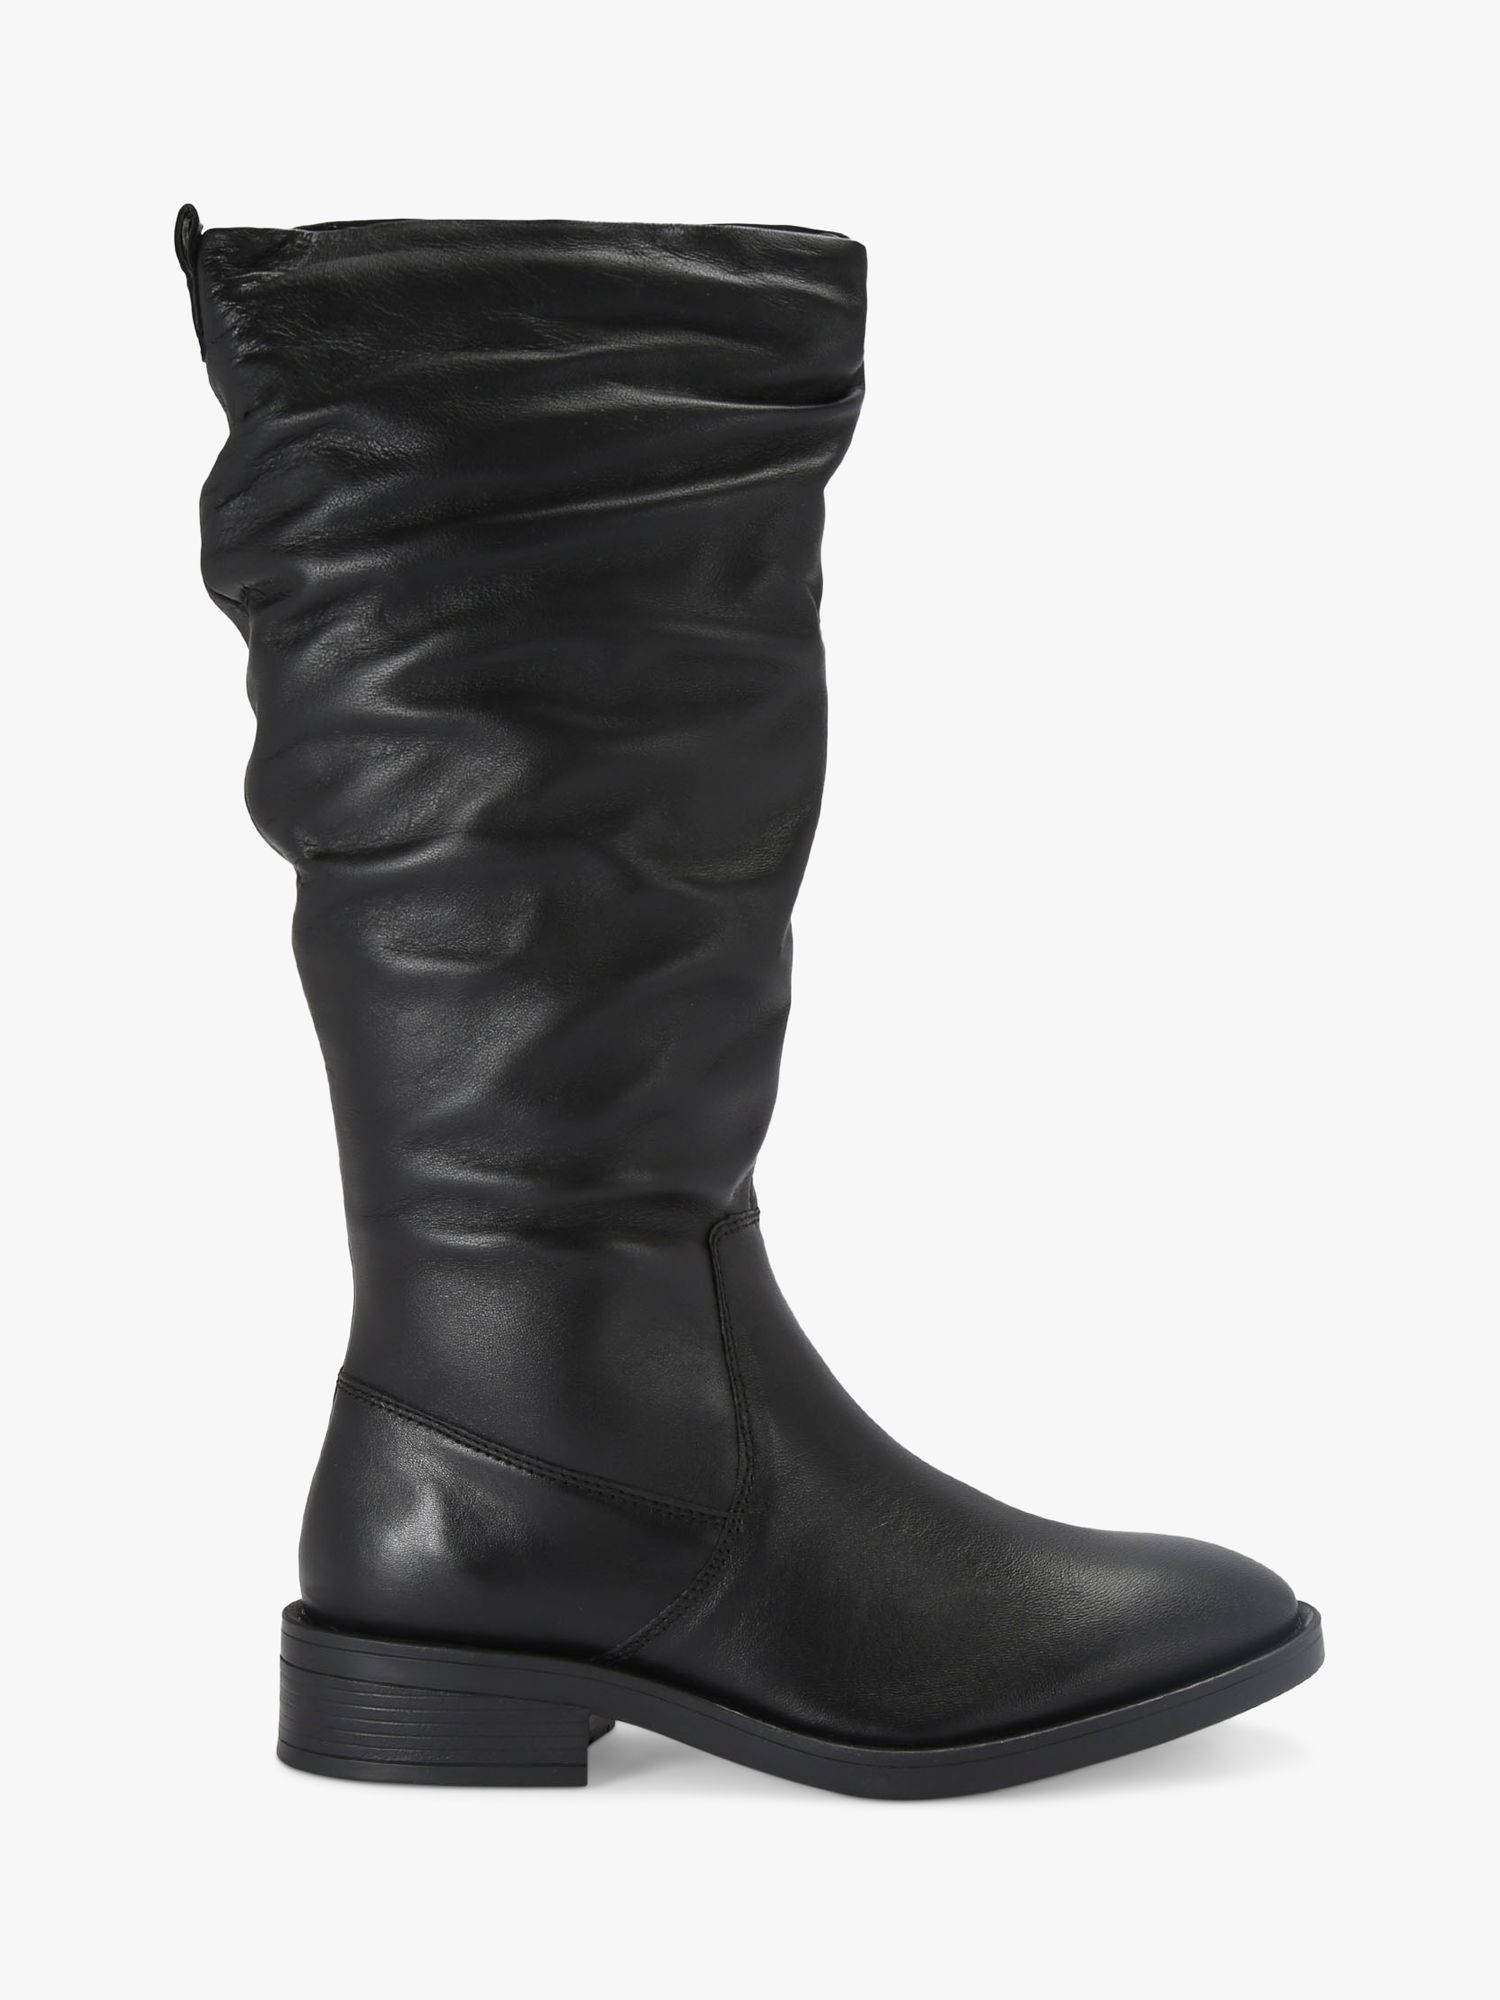 Carvela Parlour Leather Calf Boots, Black, 7